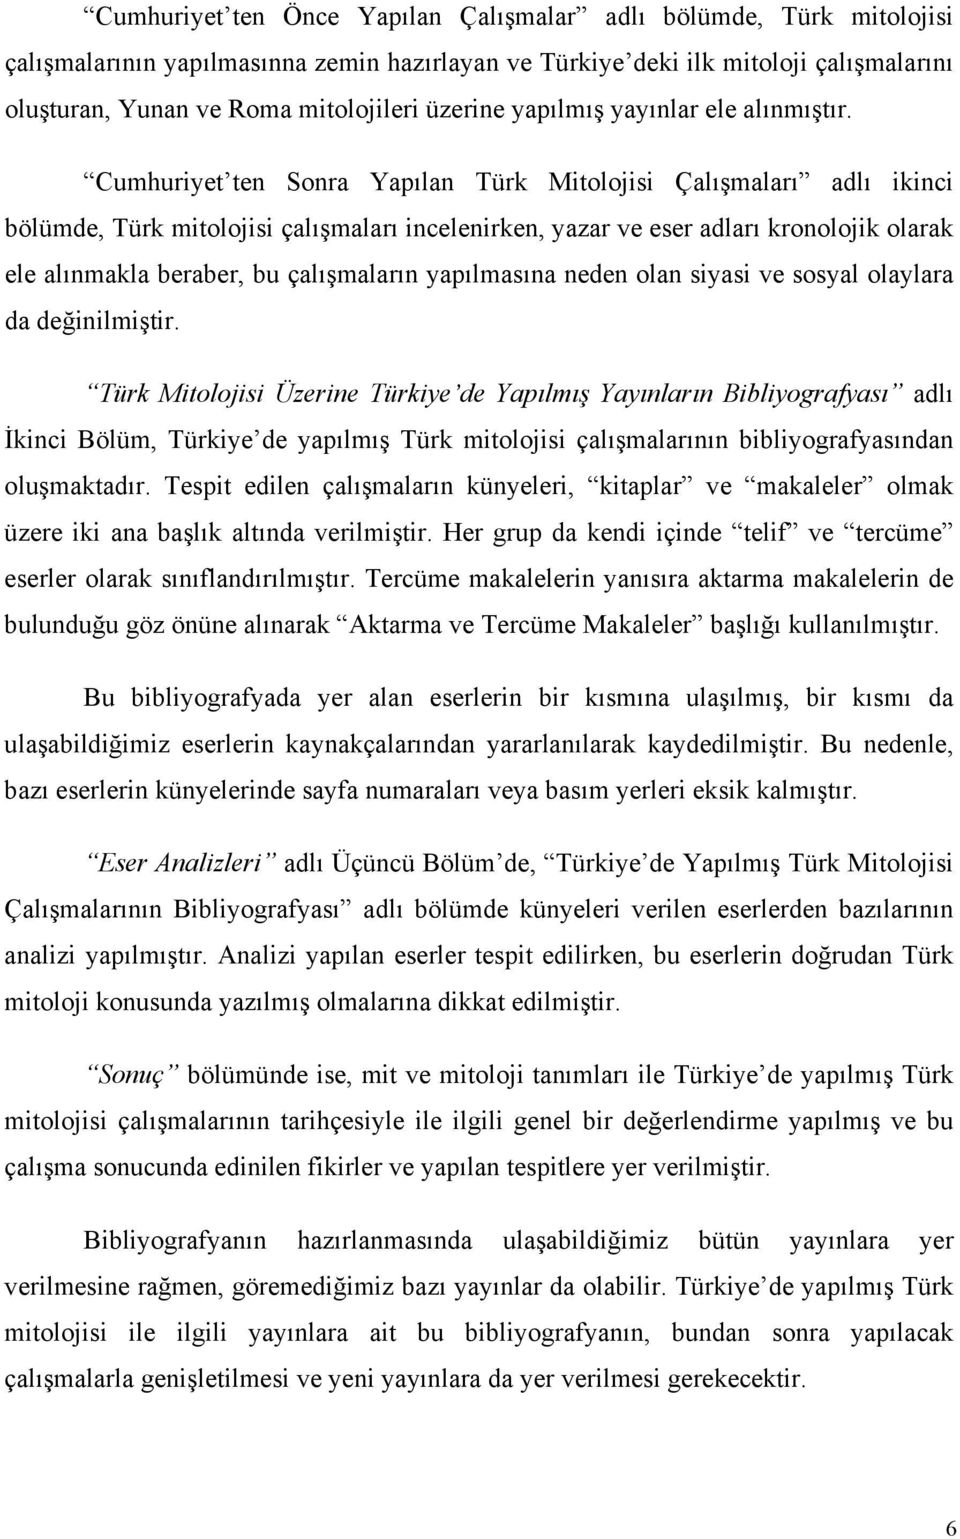 Cumhuriyet ten Sonra Yapılan Türk Mitolojisi Çalışmaları adlı ikinci bölümde, Türk mitolojisi çalışmaları incelenirken, yazar ve eser adları kronolojik olarak ele alınmakla beraber, bu çalışmaların